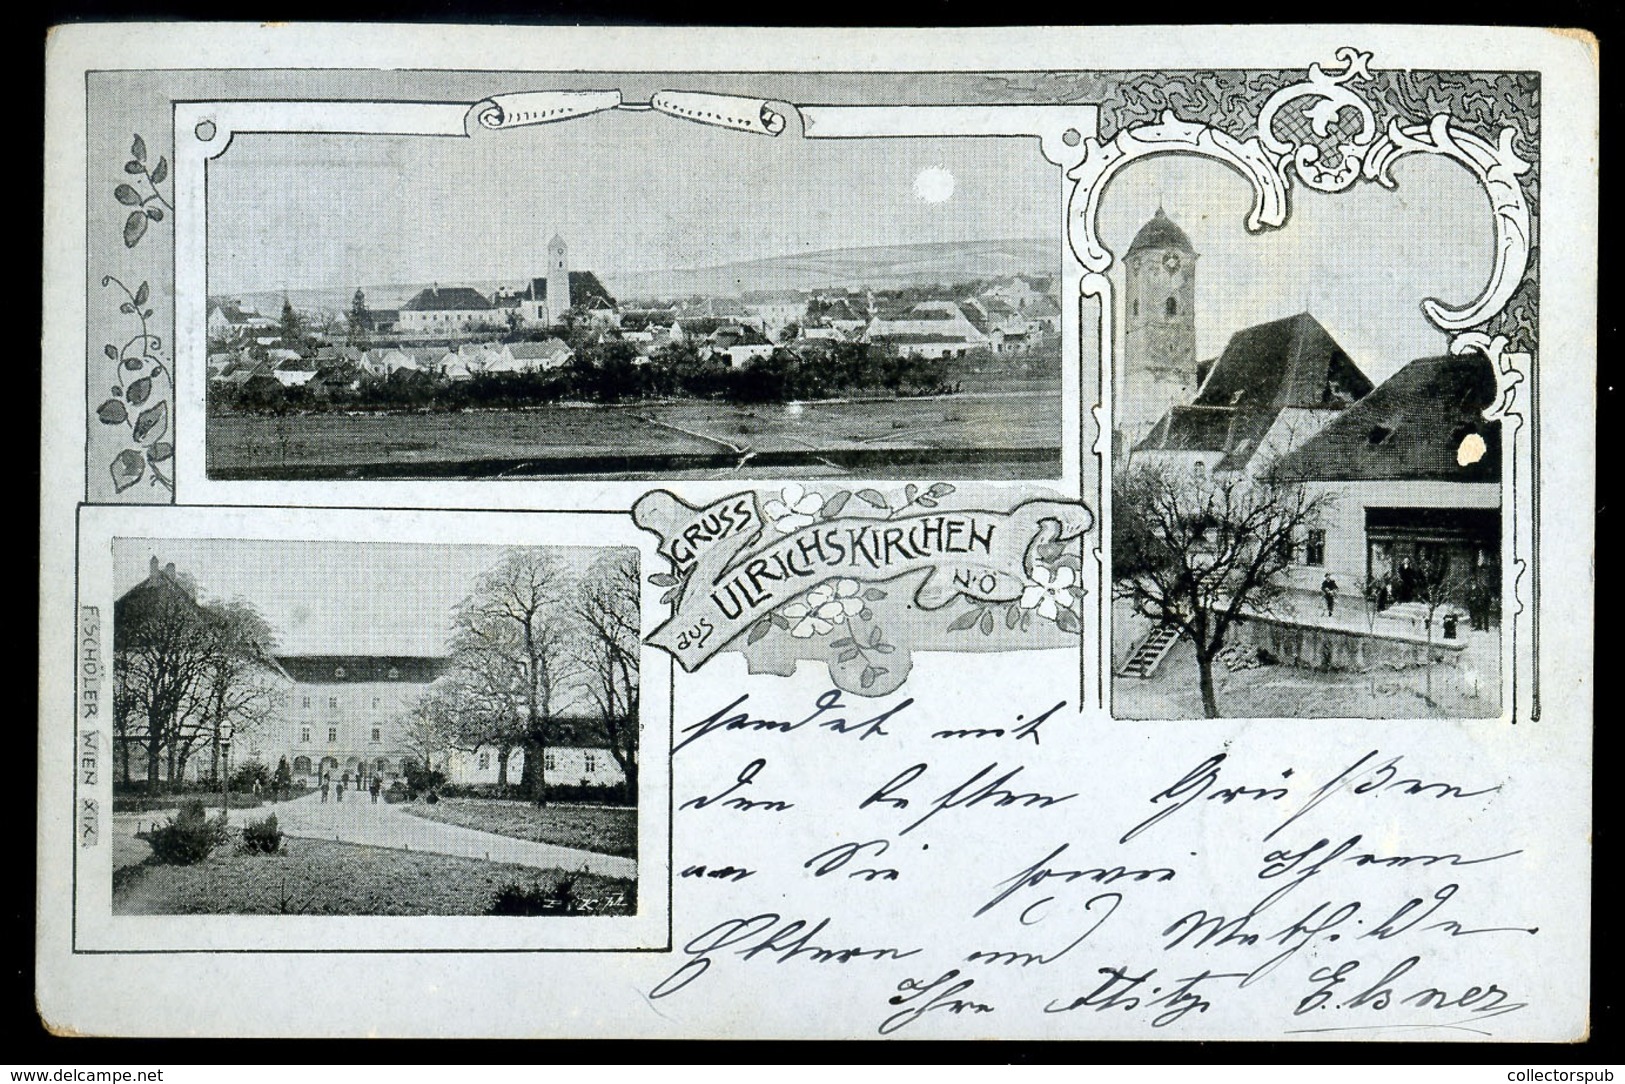 AUSZTRIA 1901. Ulrichskirchen, Régi Képeslap - Hungary